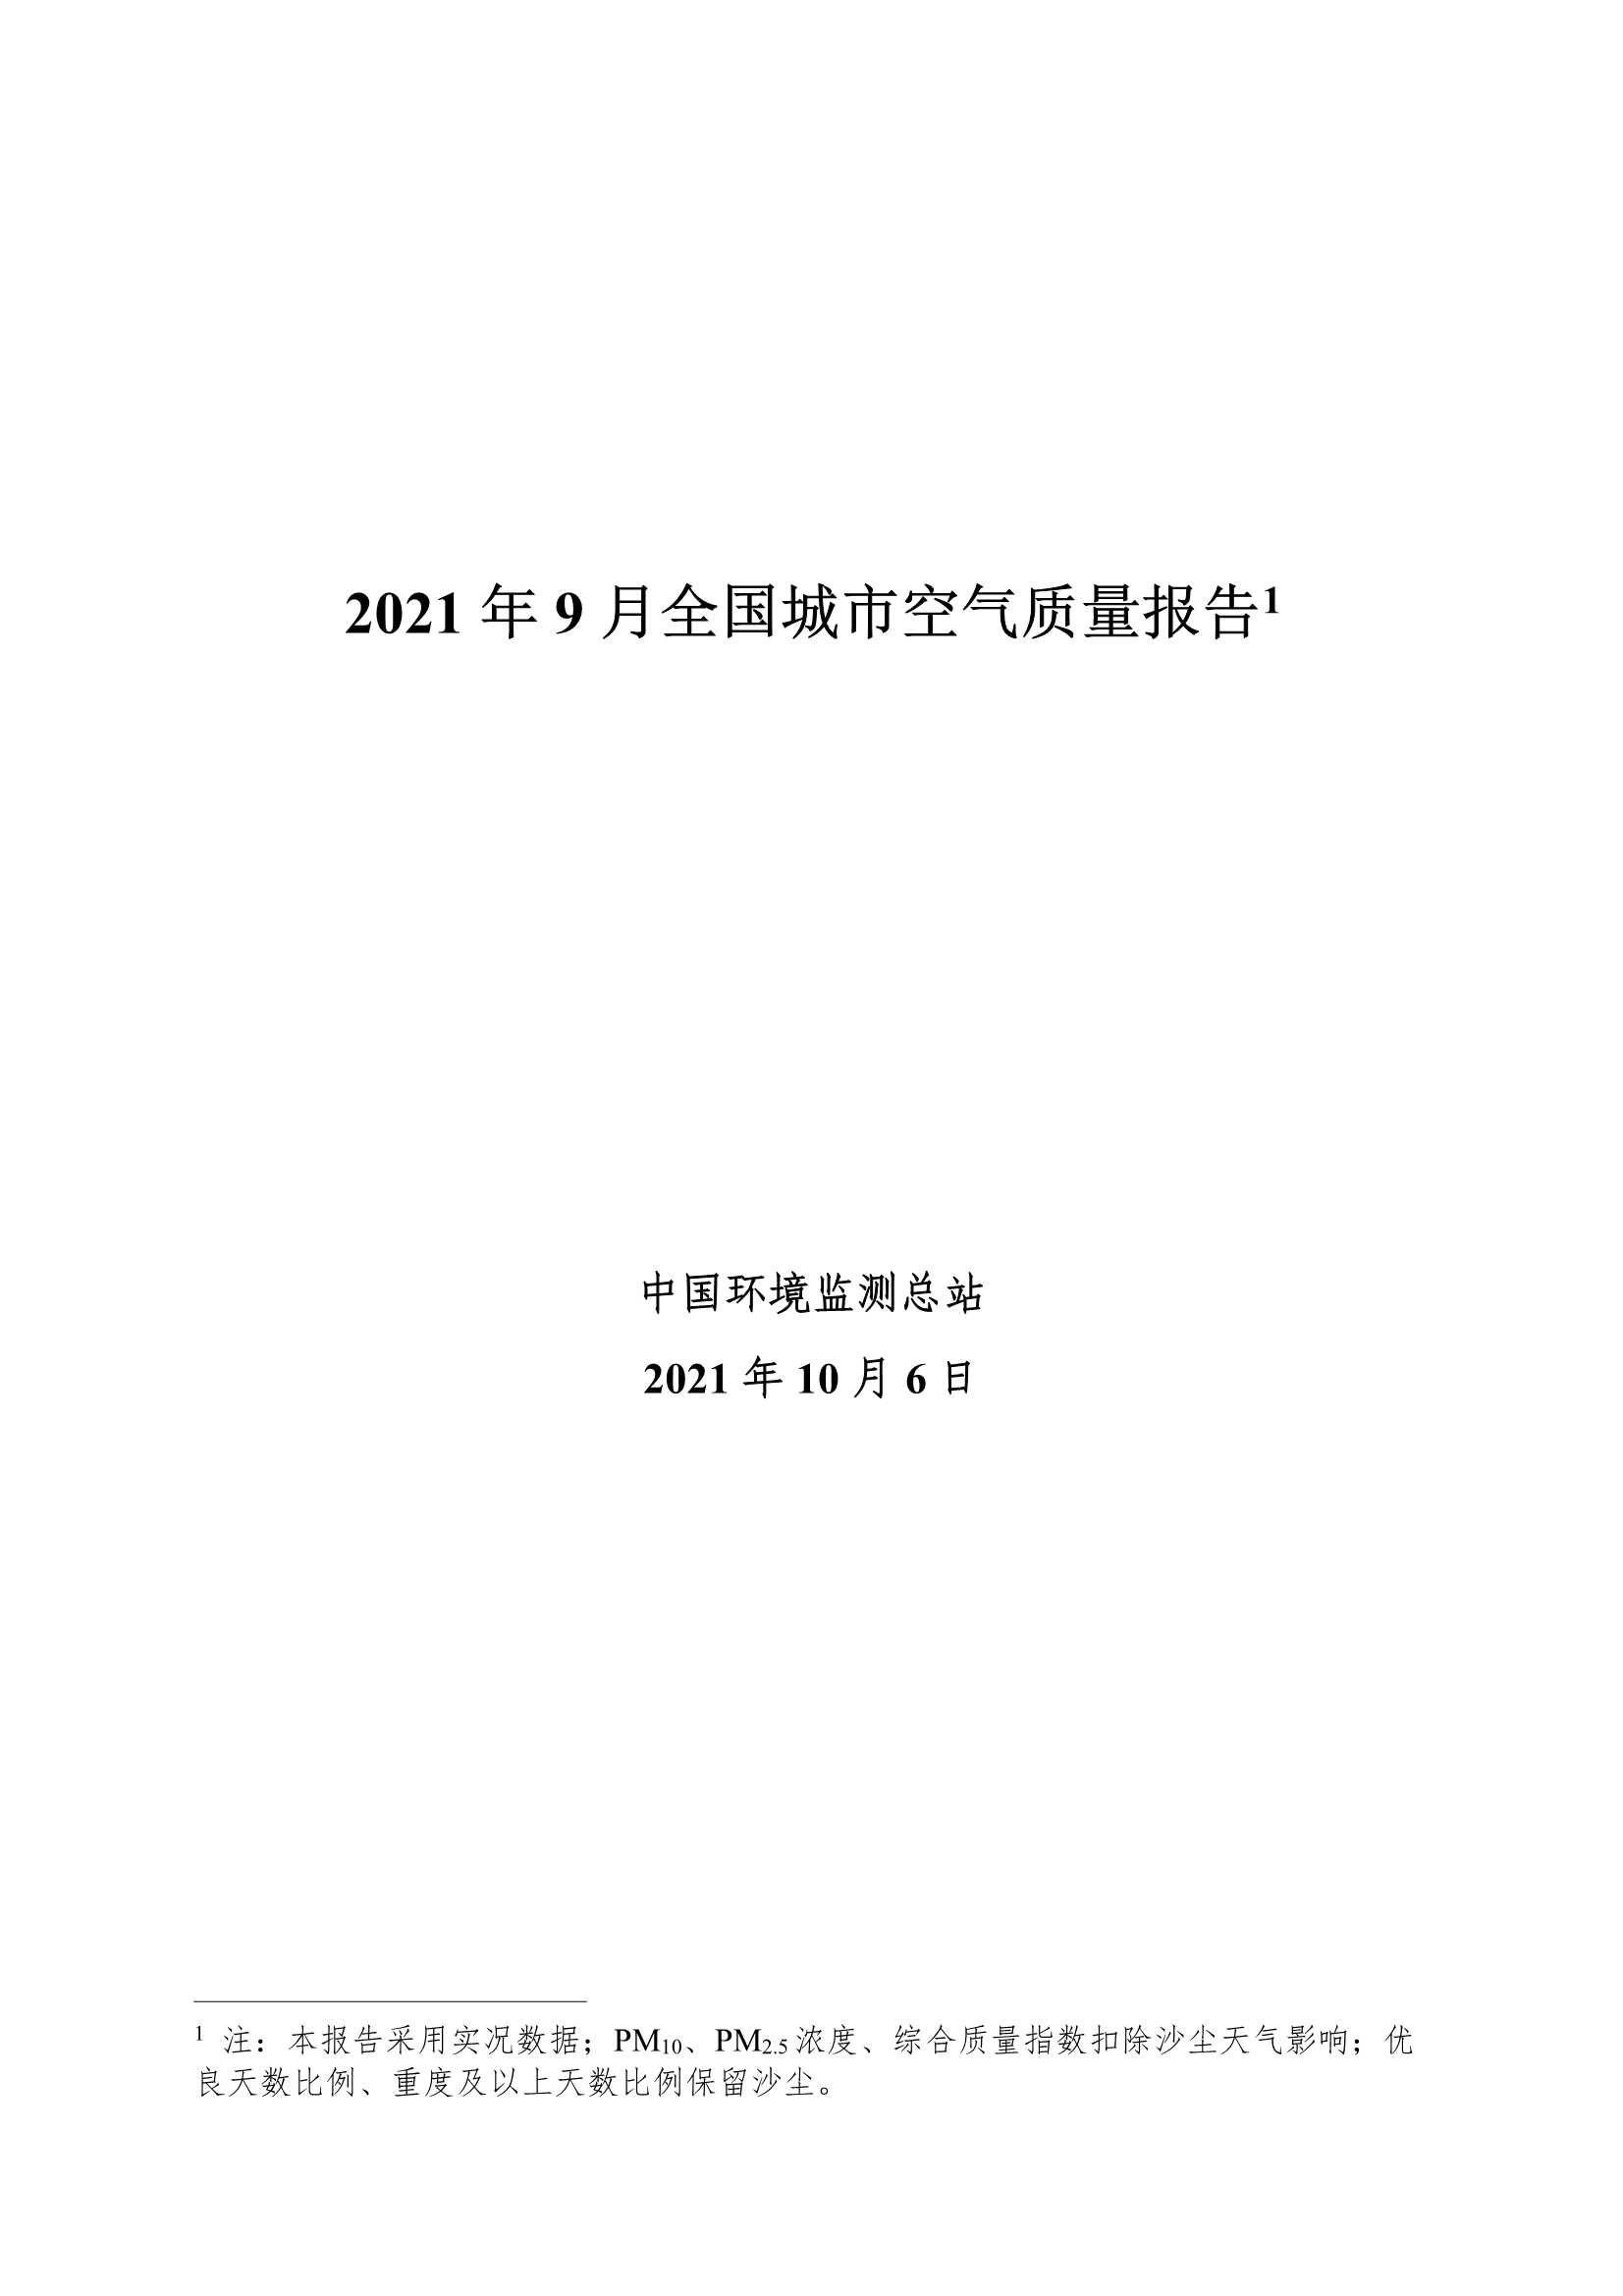 中华人民共和国生态环境部-2021年9月全国城市空气质量报告-2021.11-31页